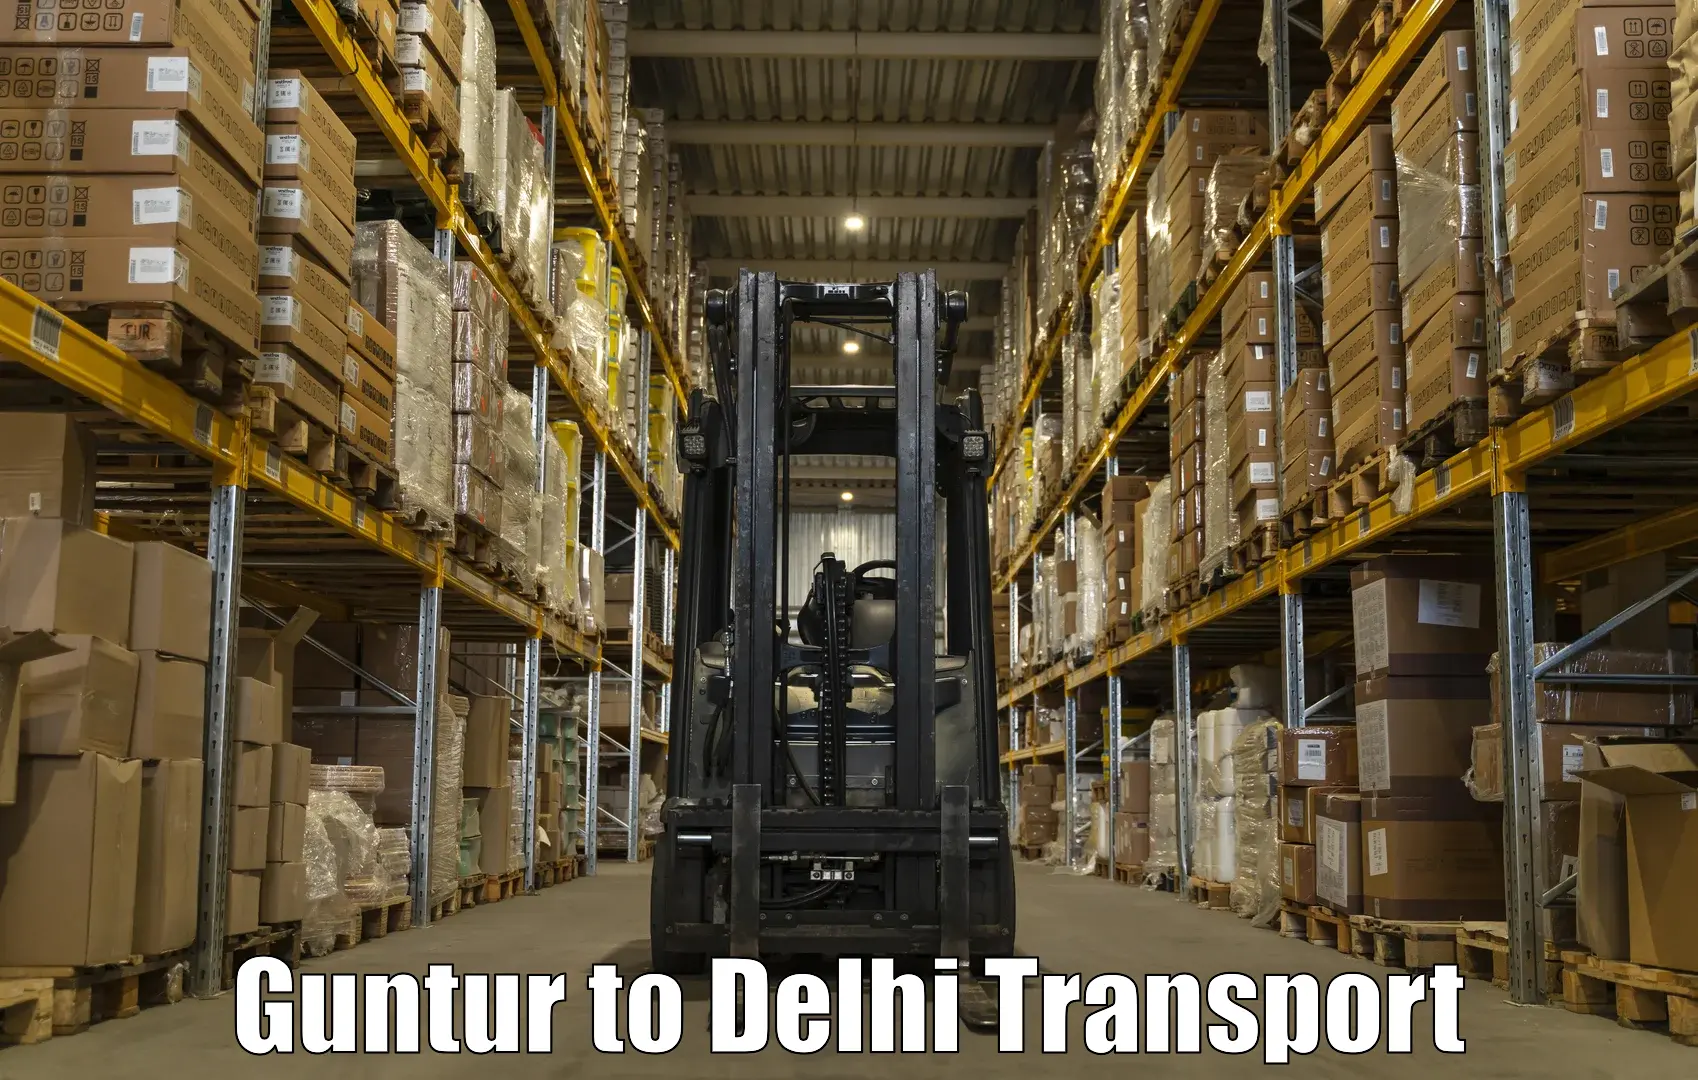 Land transport services Guntur to IIT Delhi